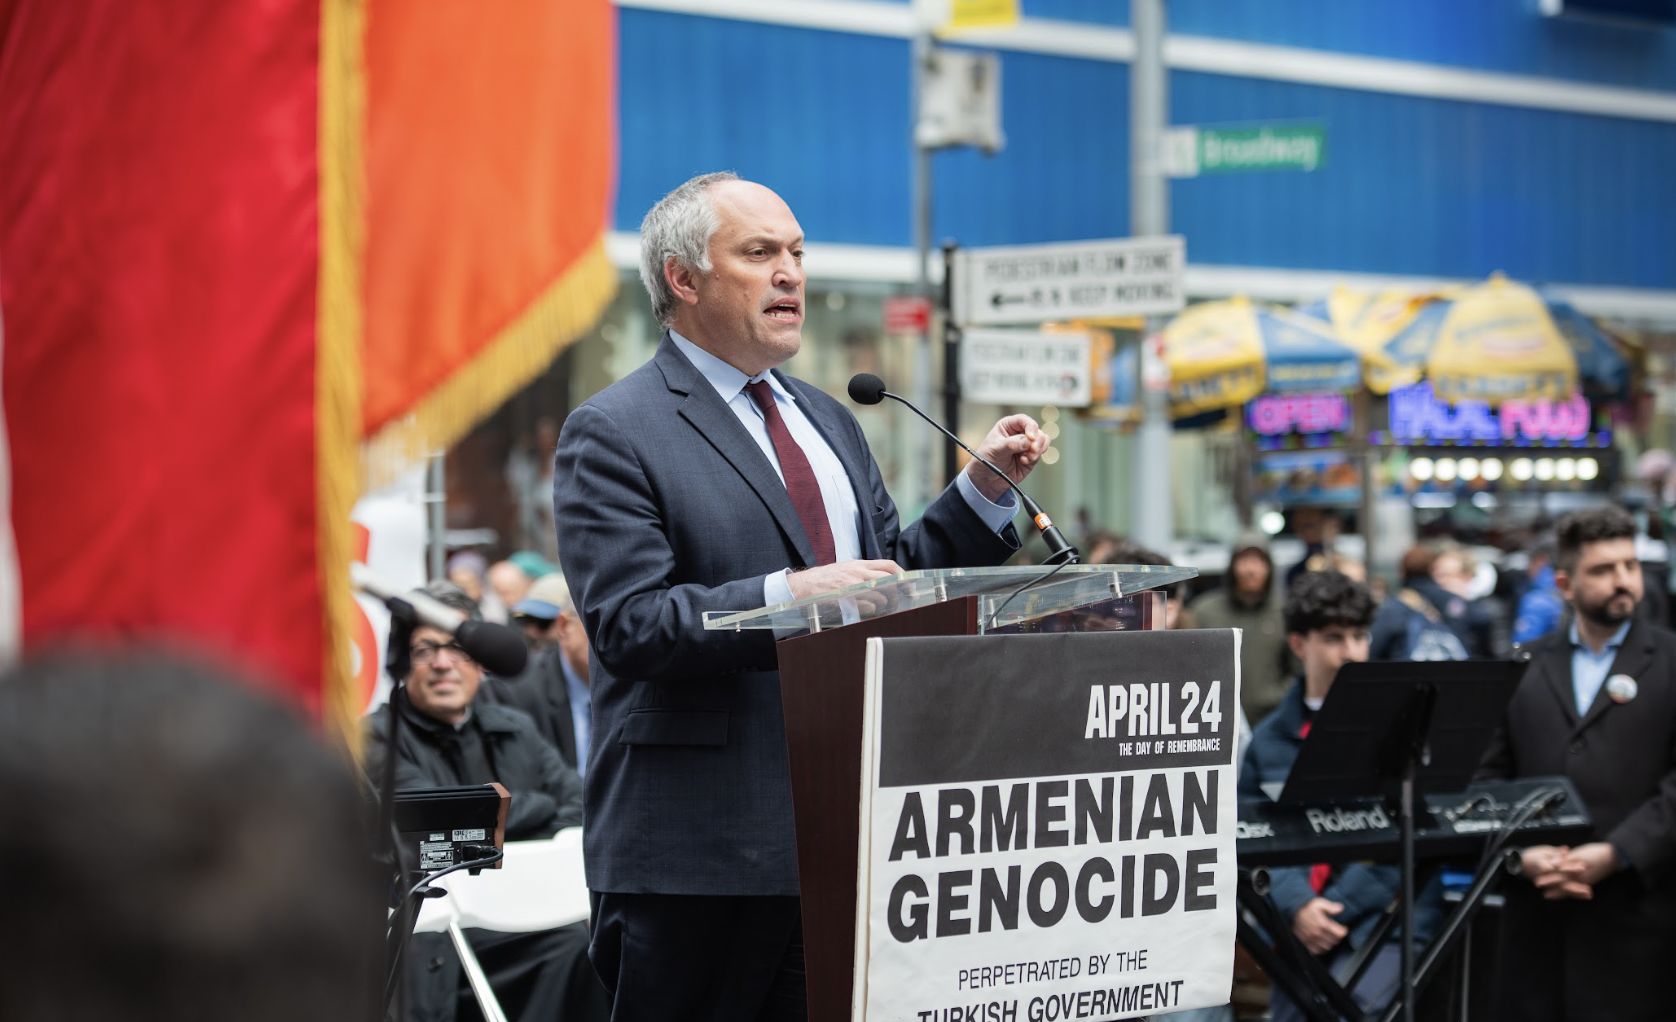 New York’un Times Meydanı'nda Ermeni Soykırımı’nın 109. yıl dönümü için anma töreni gerçekleştirildi